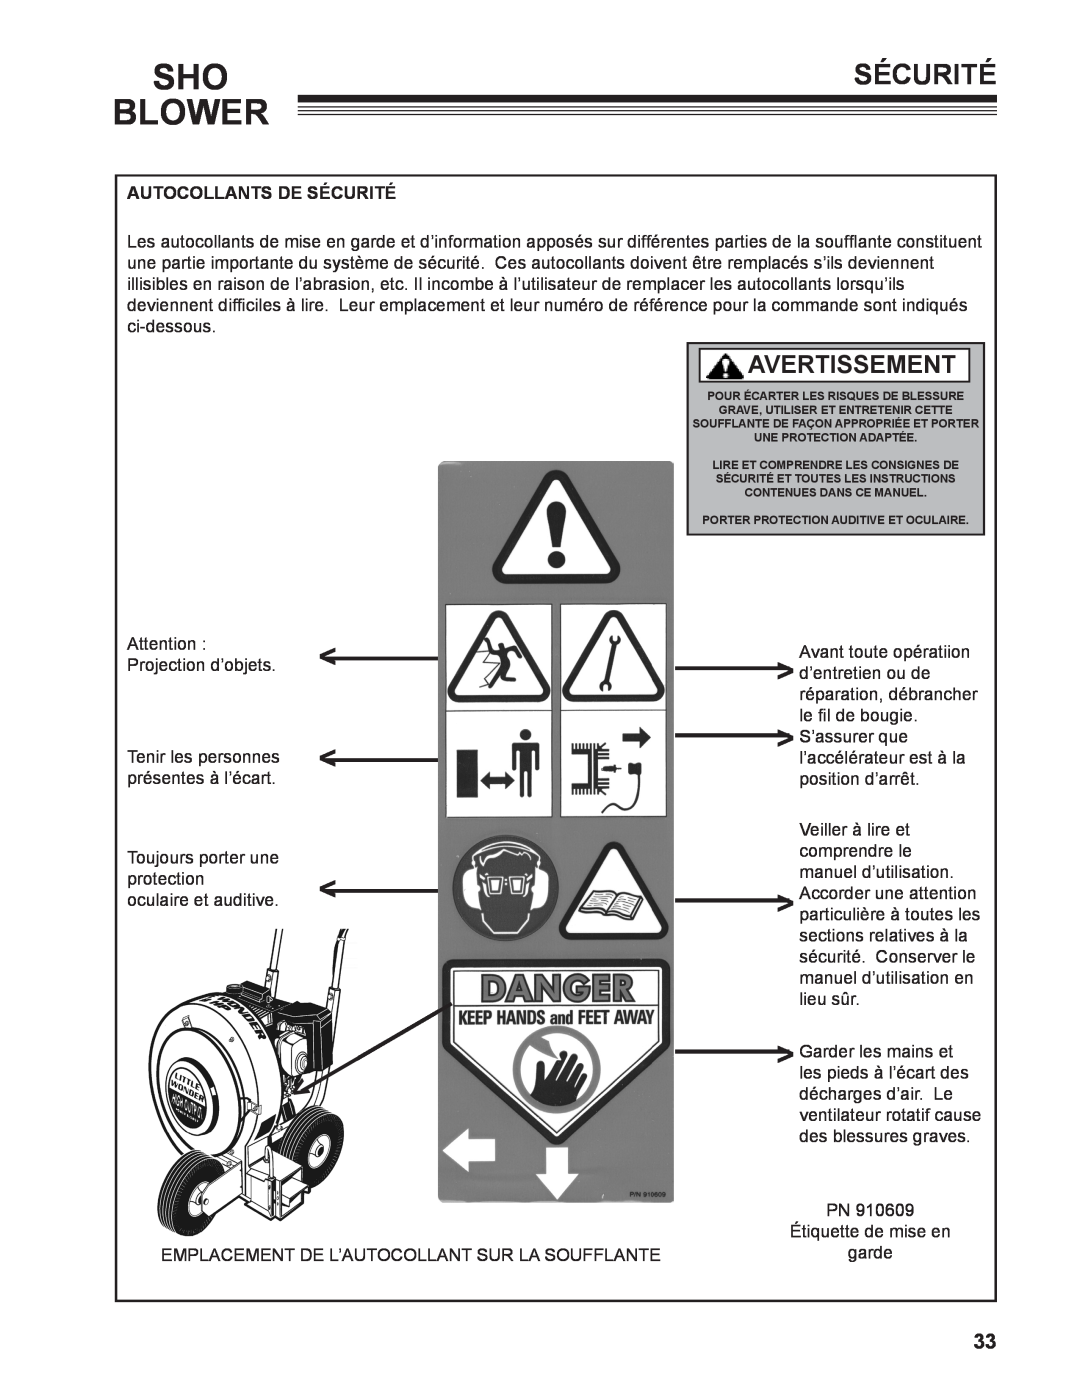 Little Wonder 9502-00-01 technical manual Blower, Avertissement, Autocollants De Sécurité 